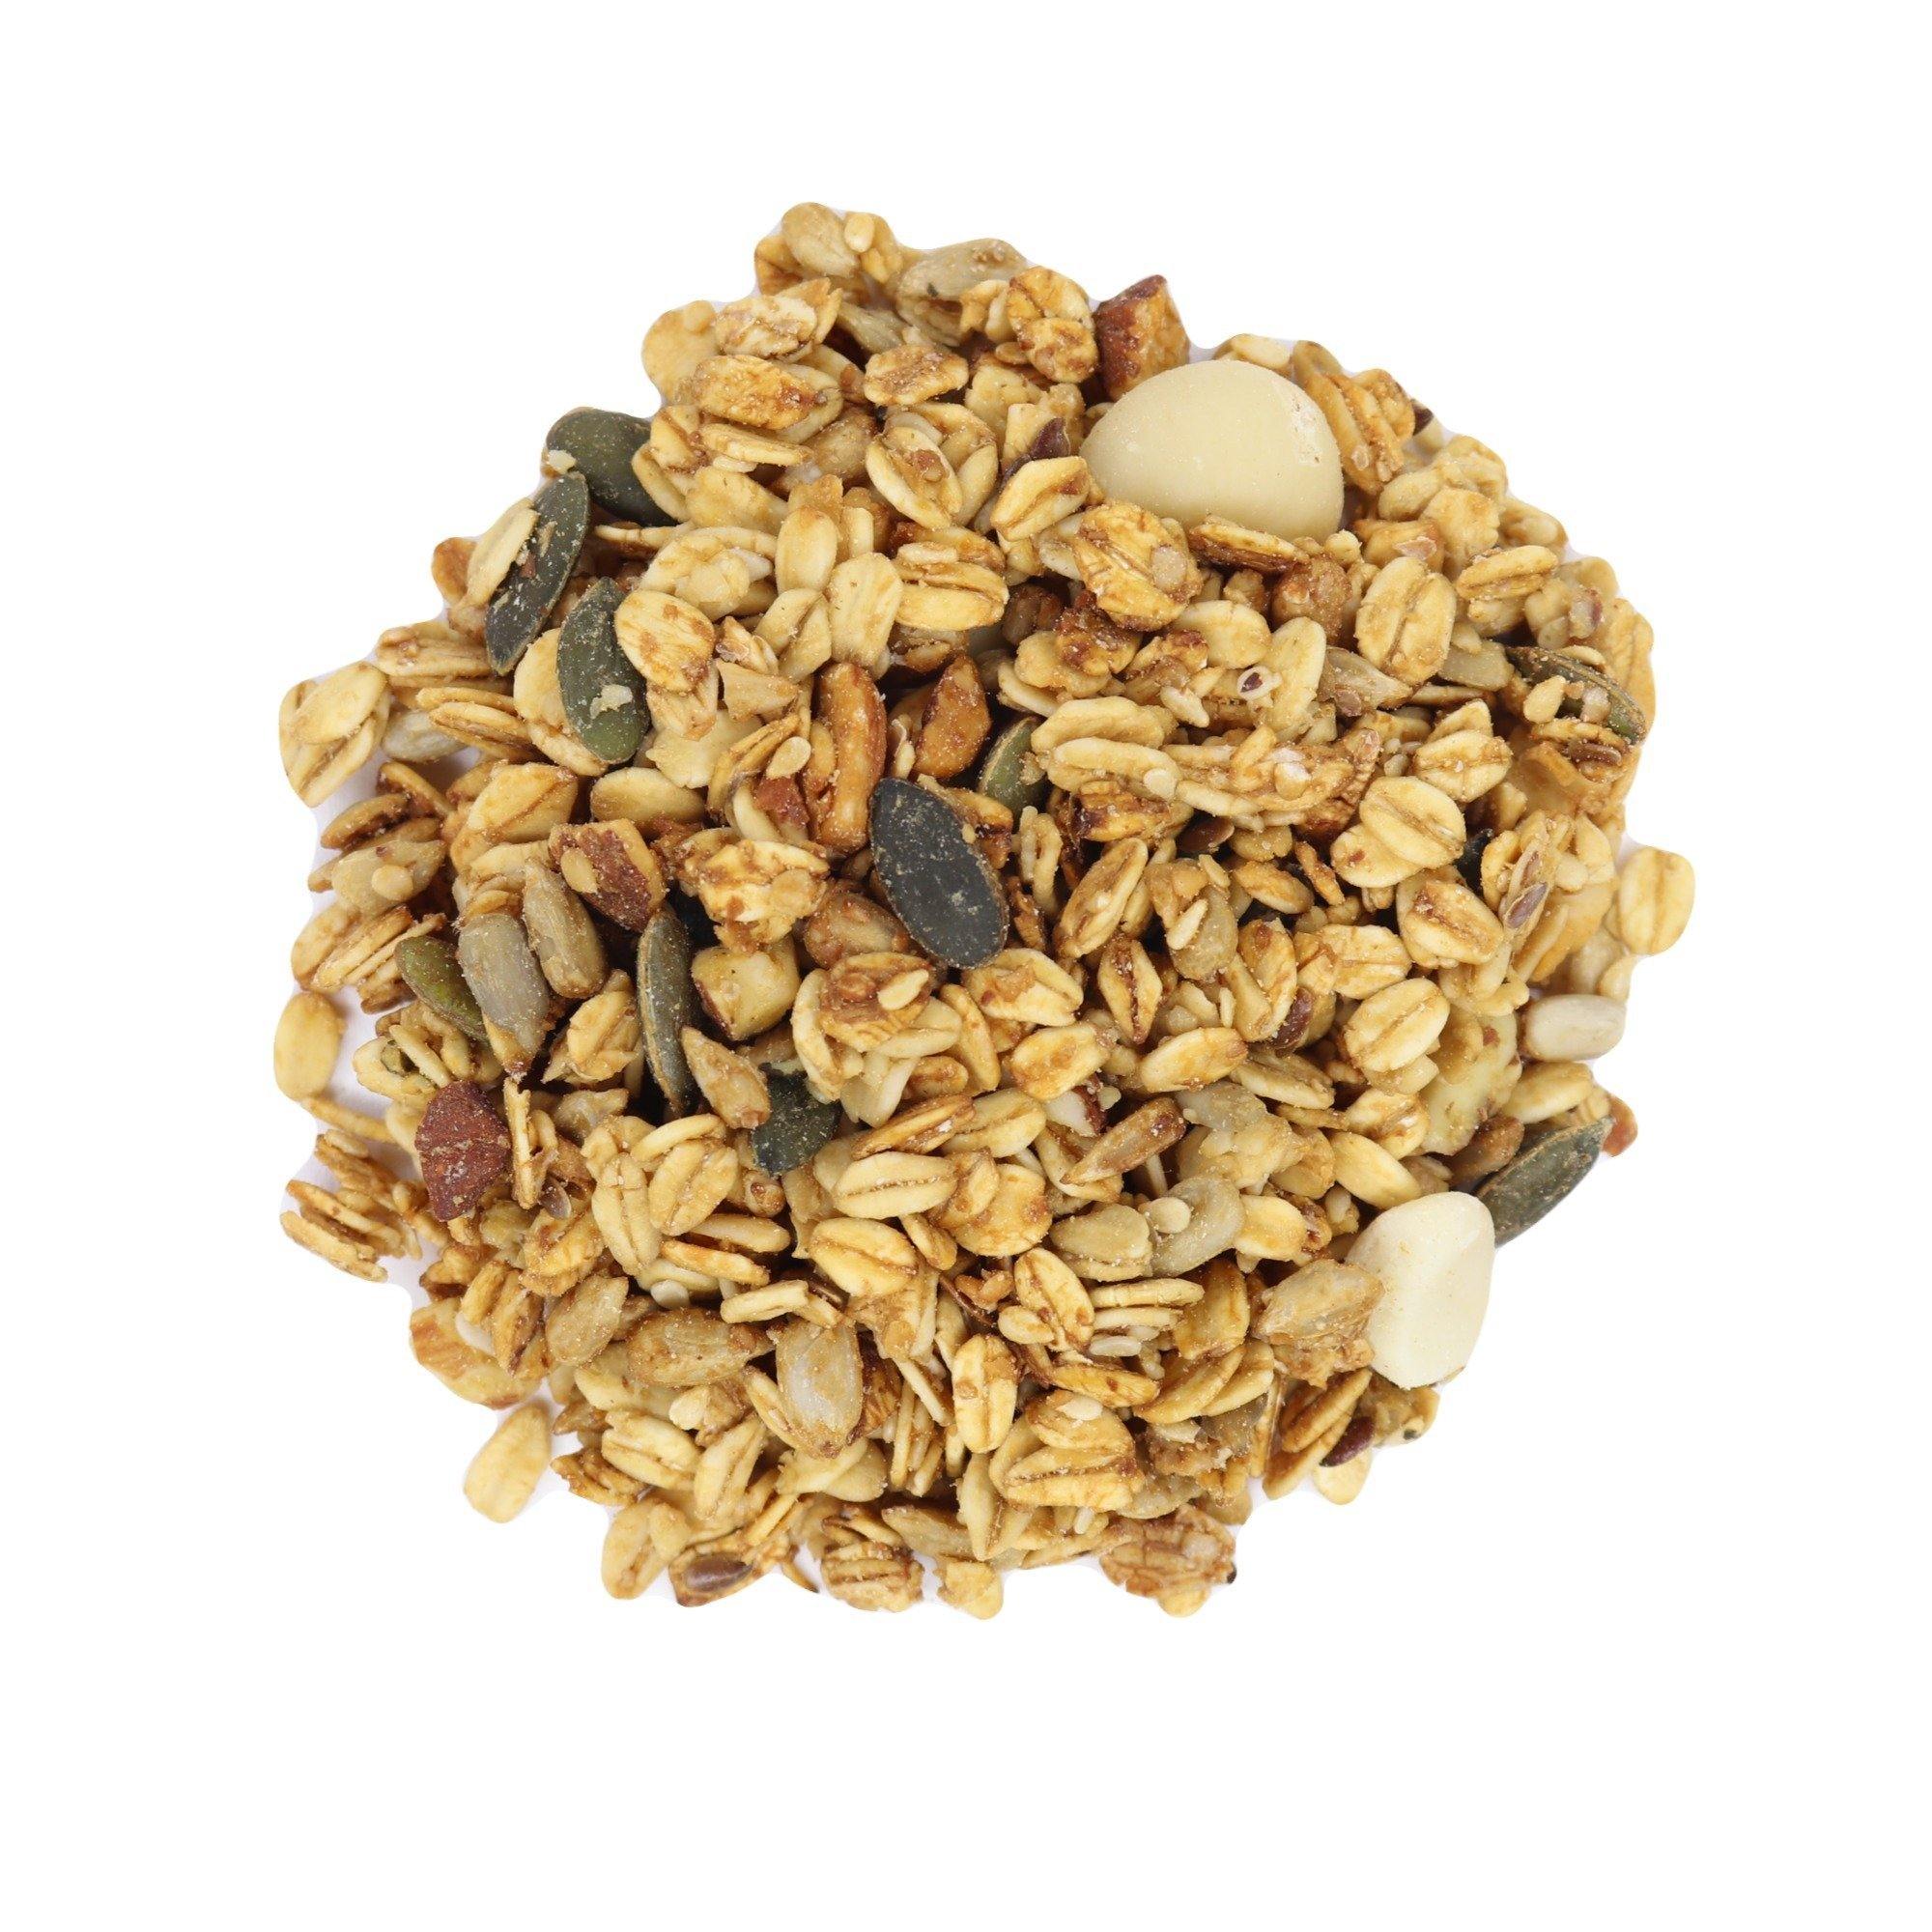 Macadamia, Almond & Hemp Seed Granola - Pantree